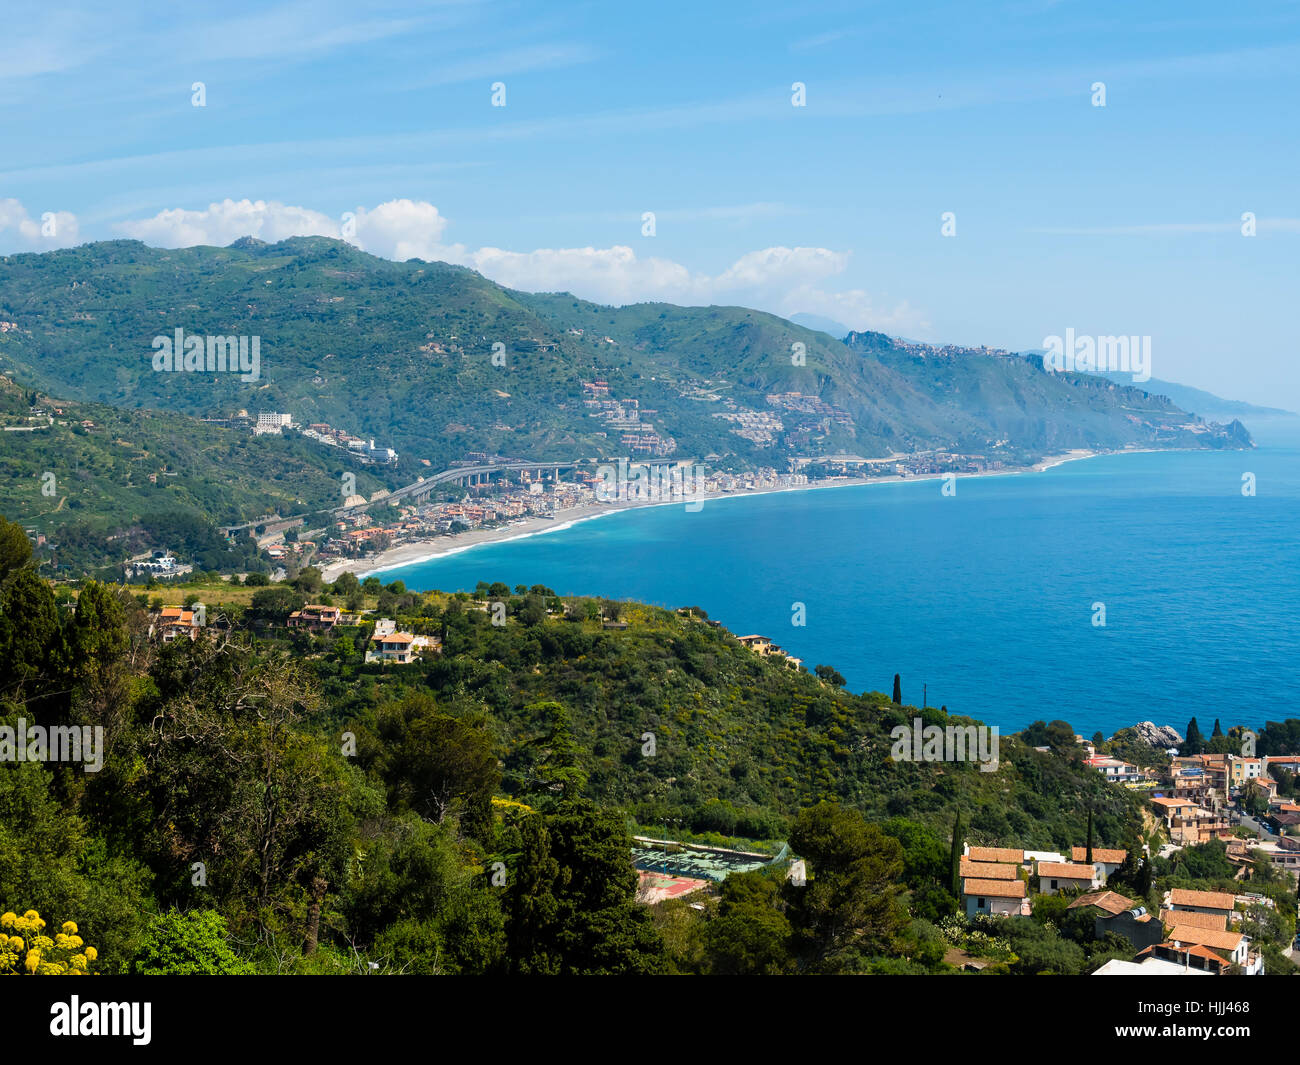 Italy, Sicily, coastline at Taormina Stock Photo